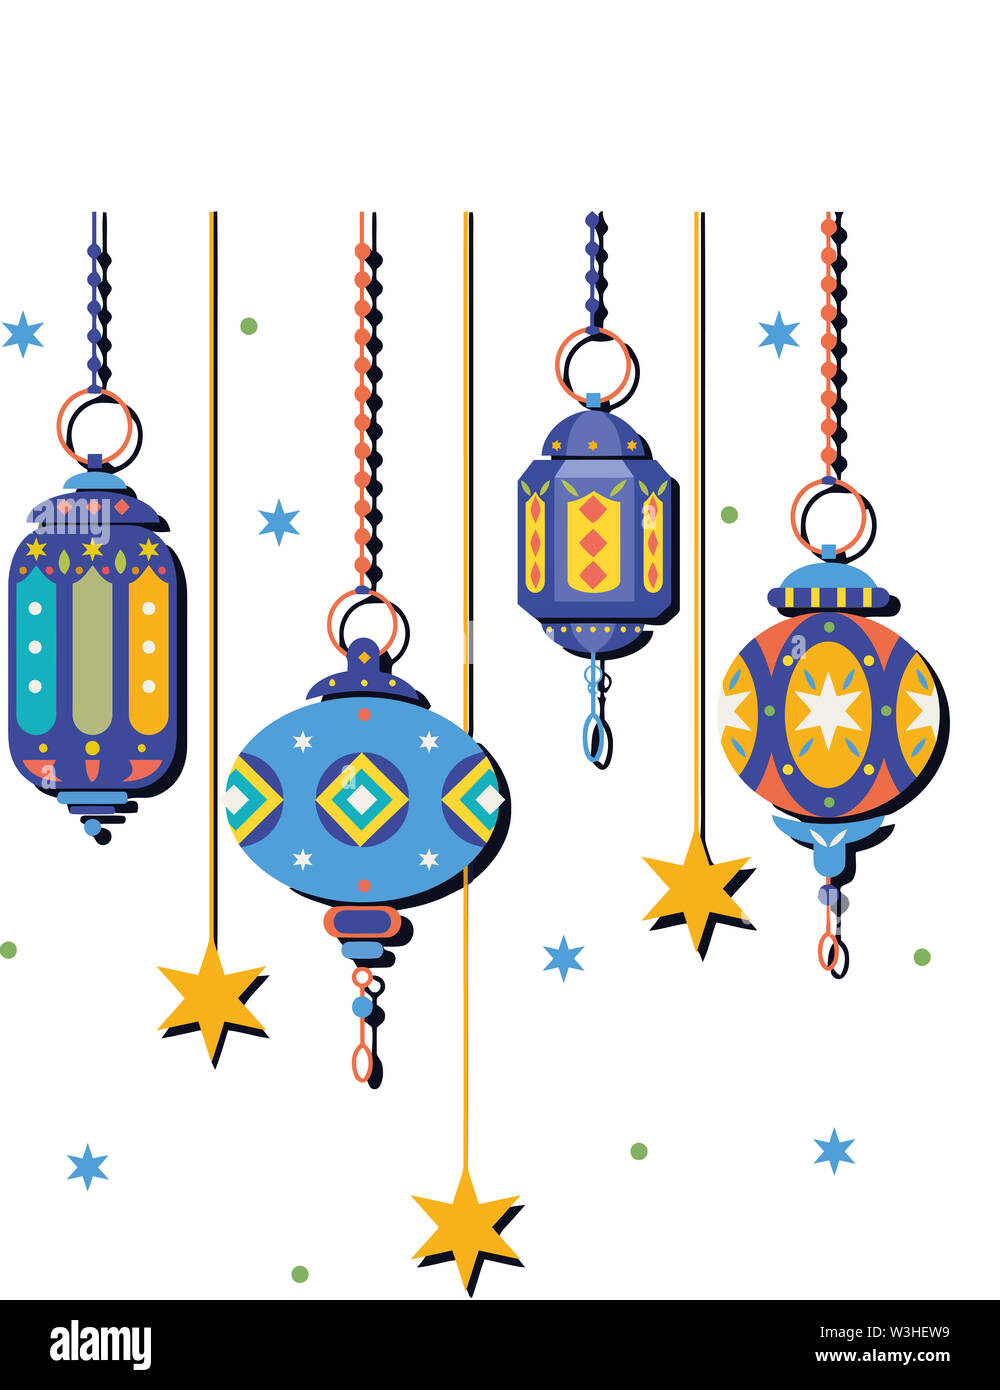 Ramadan kareem culture traditionnelle lanterne musulmane illustration Banque D'Images